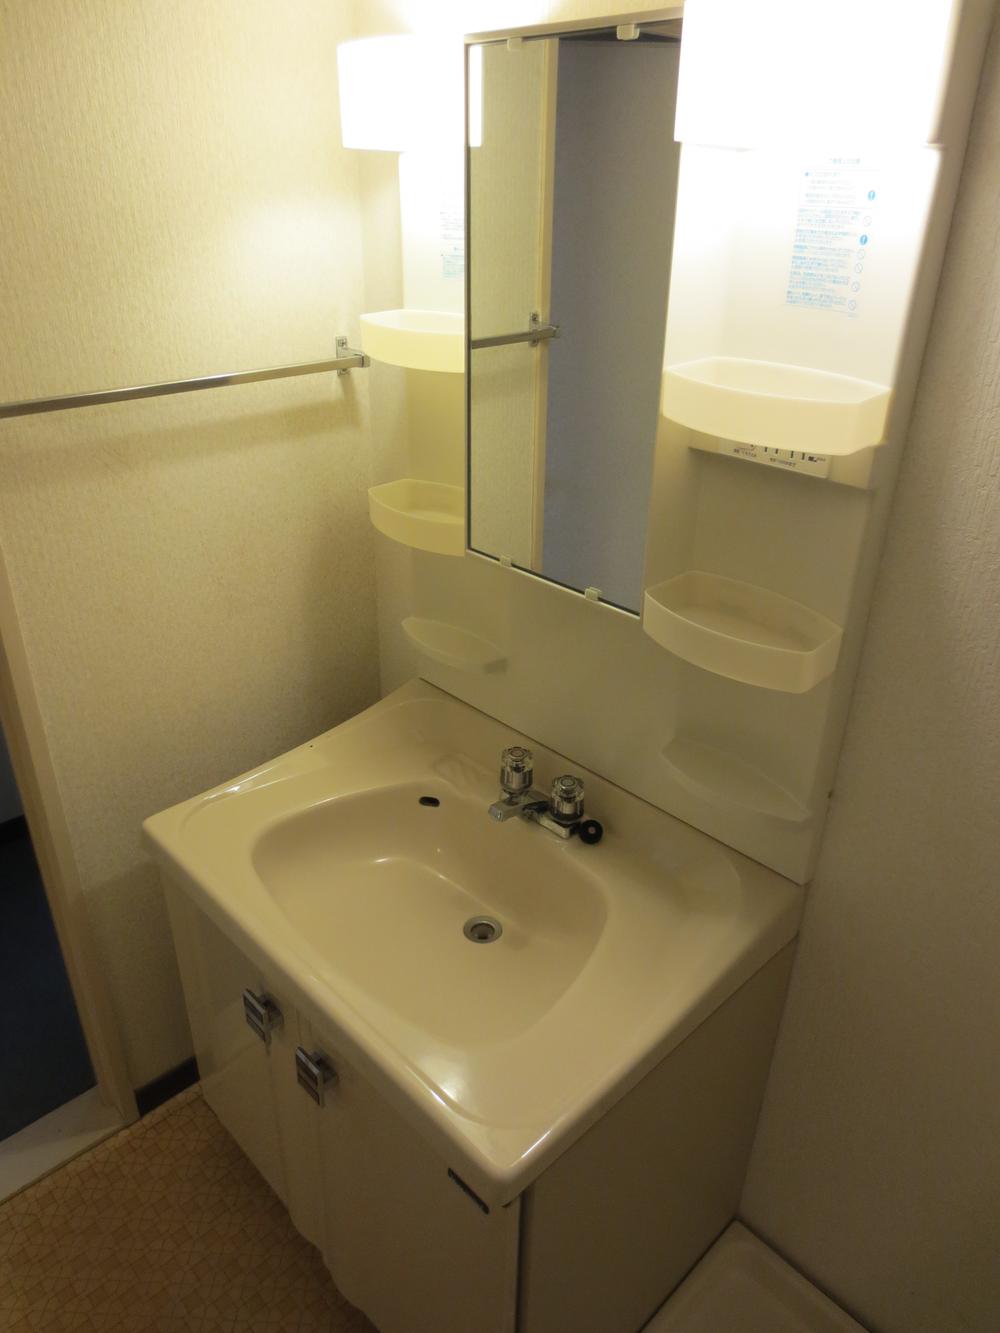 Wash basin, toilet. Wash basin ・ Washroom (December 2013) Shooting